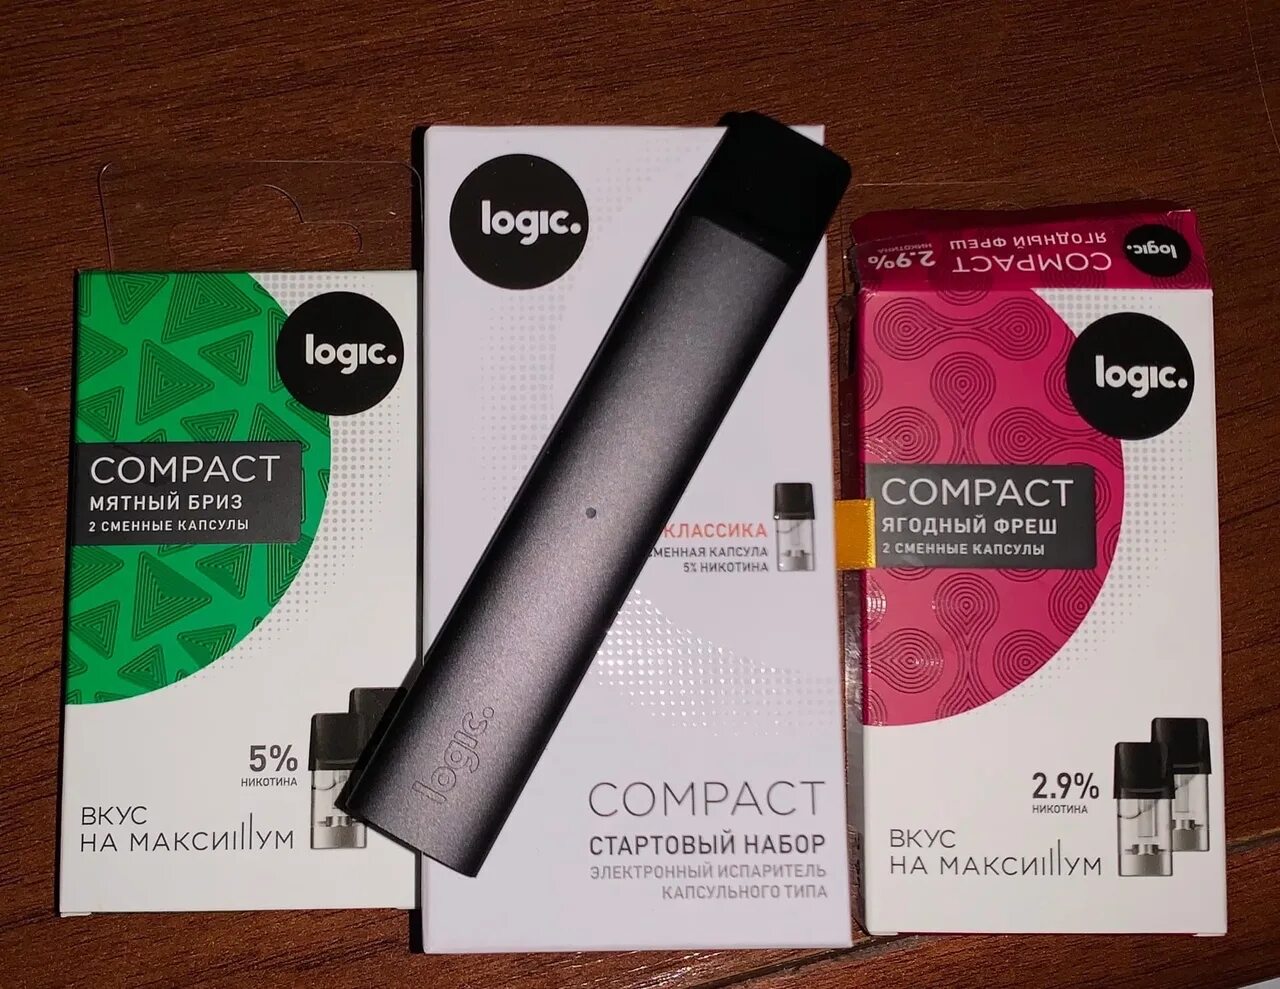 Logic Compact 350 Mah картриджи. Вейп Logic Compact картриджи. Лоджик электронная сигарета картридж. Картриджи на Logic 5%. Лоджик это